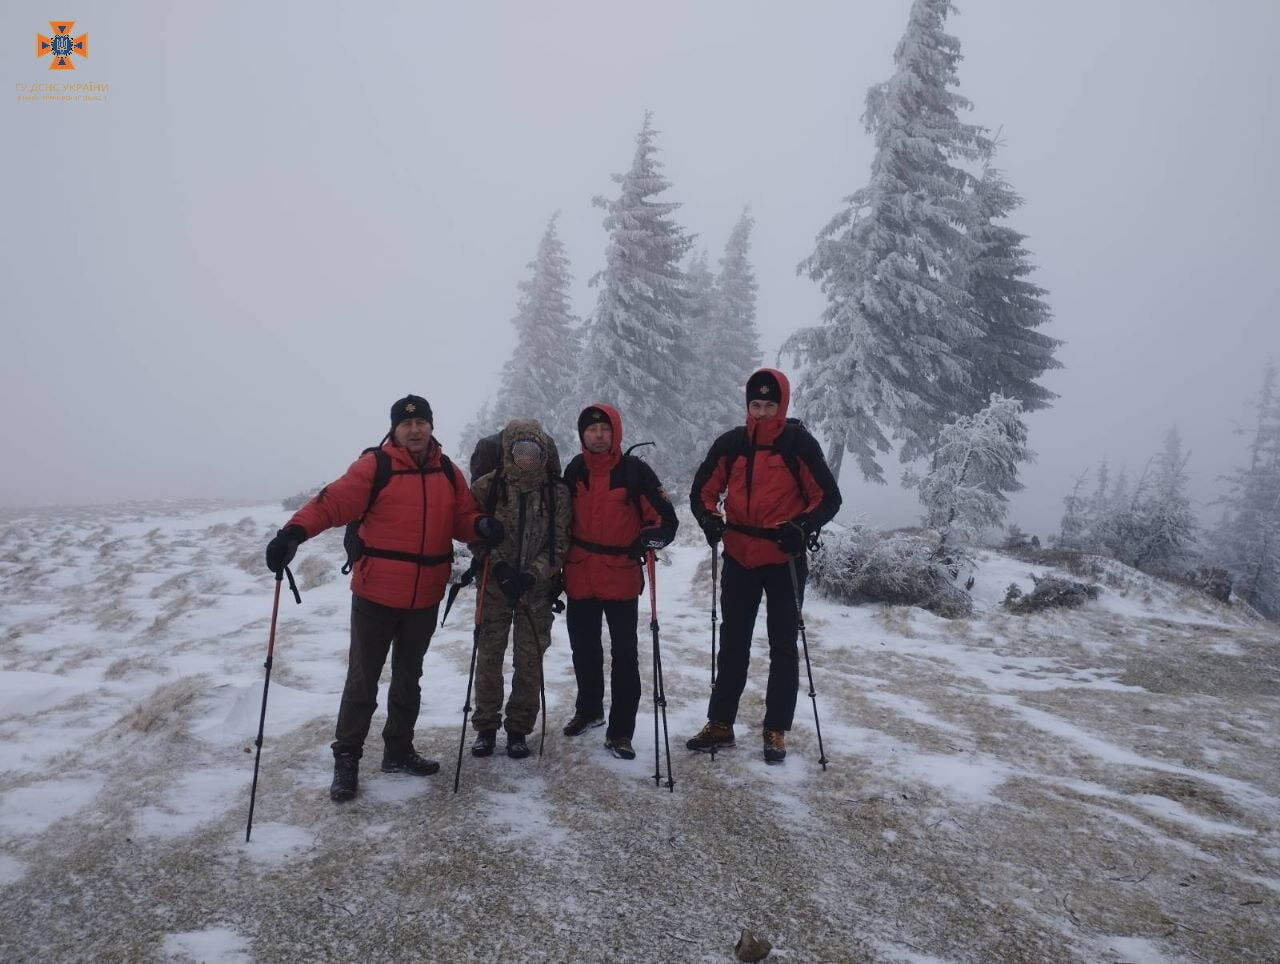 Рятувальники допомогли вибратися зі снігового полону киянці, якій стало зле під час сходження на гору в Карпатах. Фото